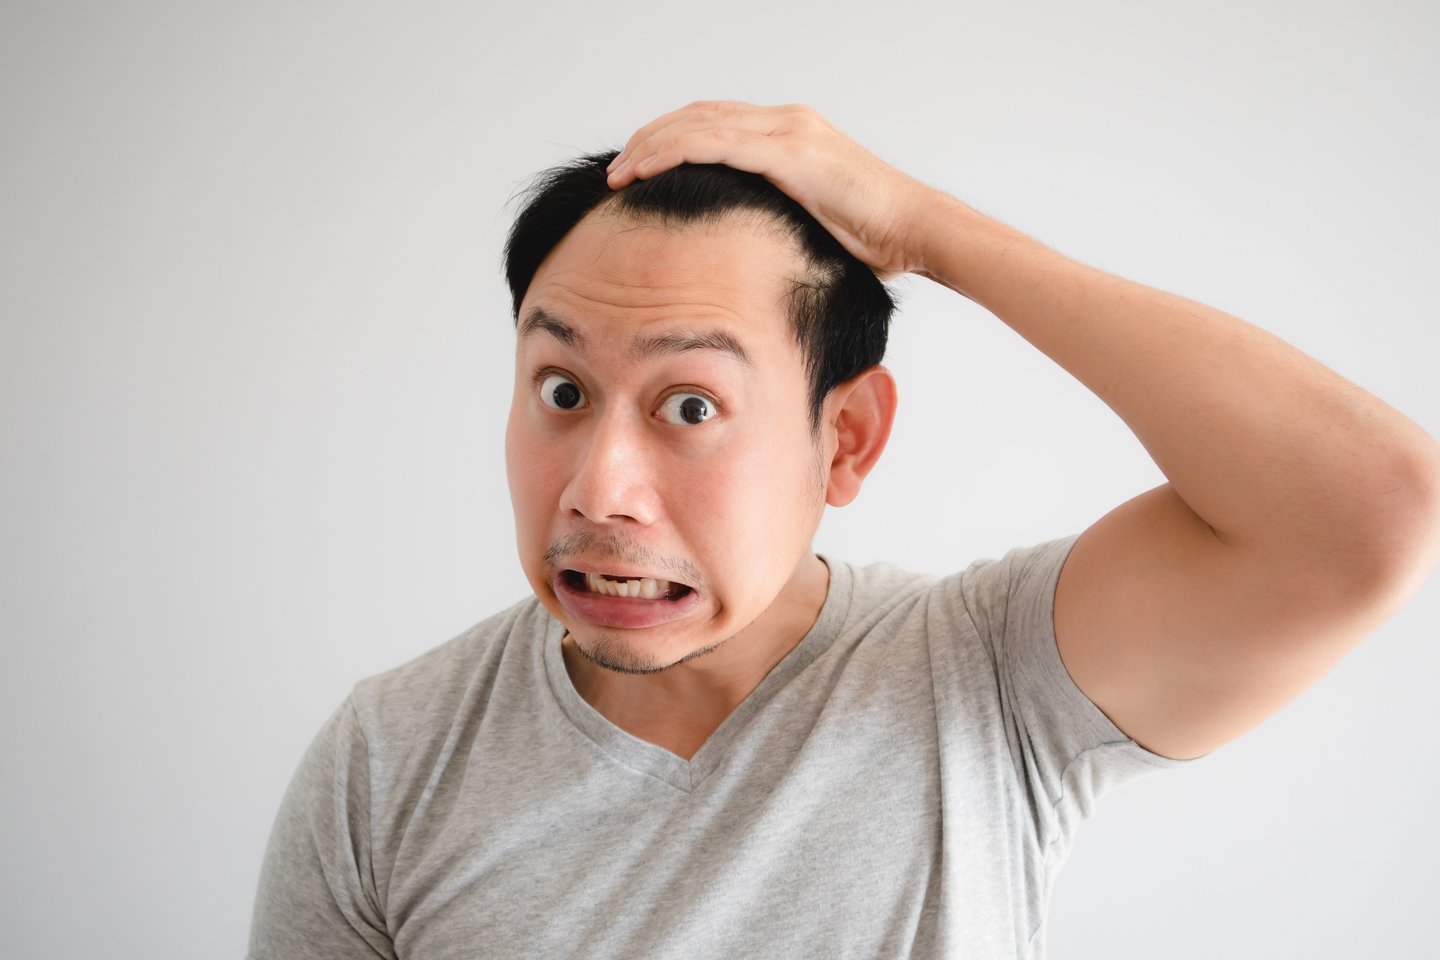 Vis daugiau atsiranda duomenų ir apie dažnėjantį ryškų plaukų slinkimą arba netekimą tarp žmonių, persirgusių COVID–19. <br> 123rf.com nuotr.